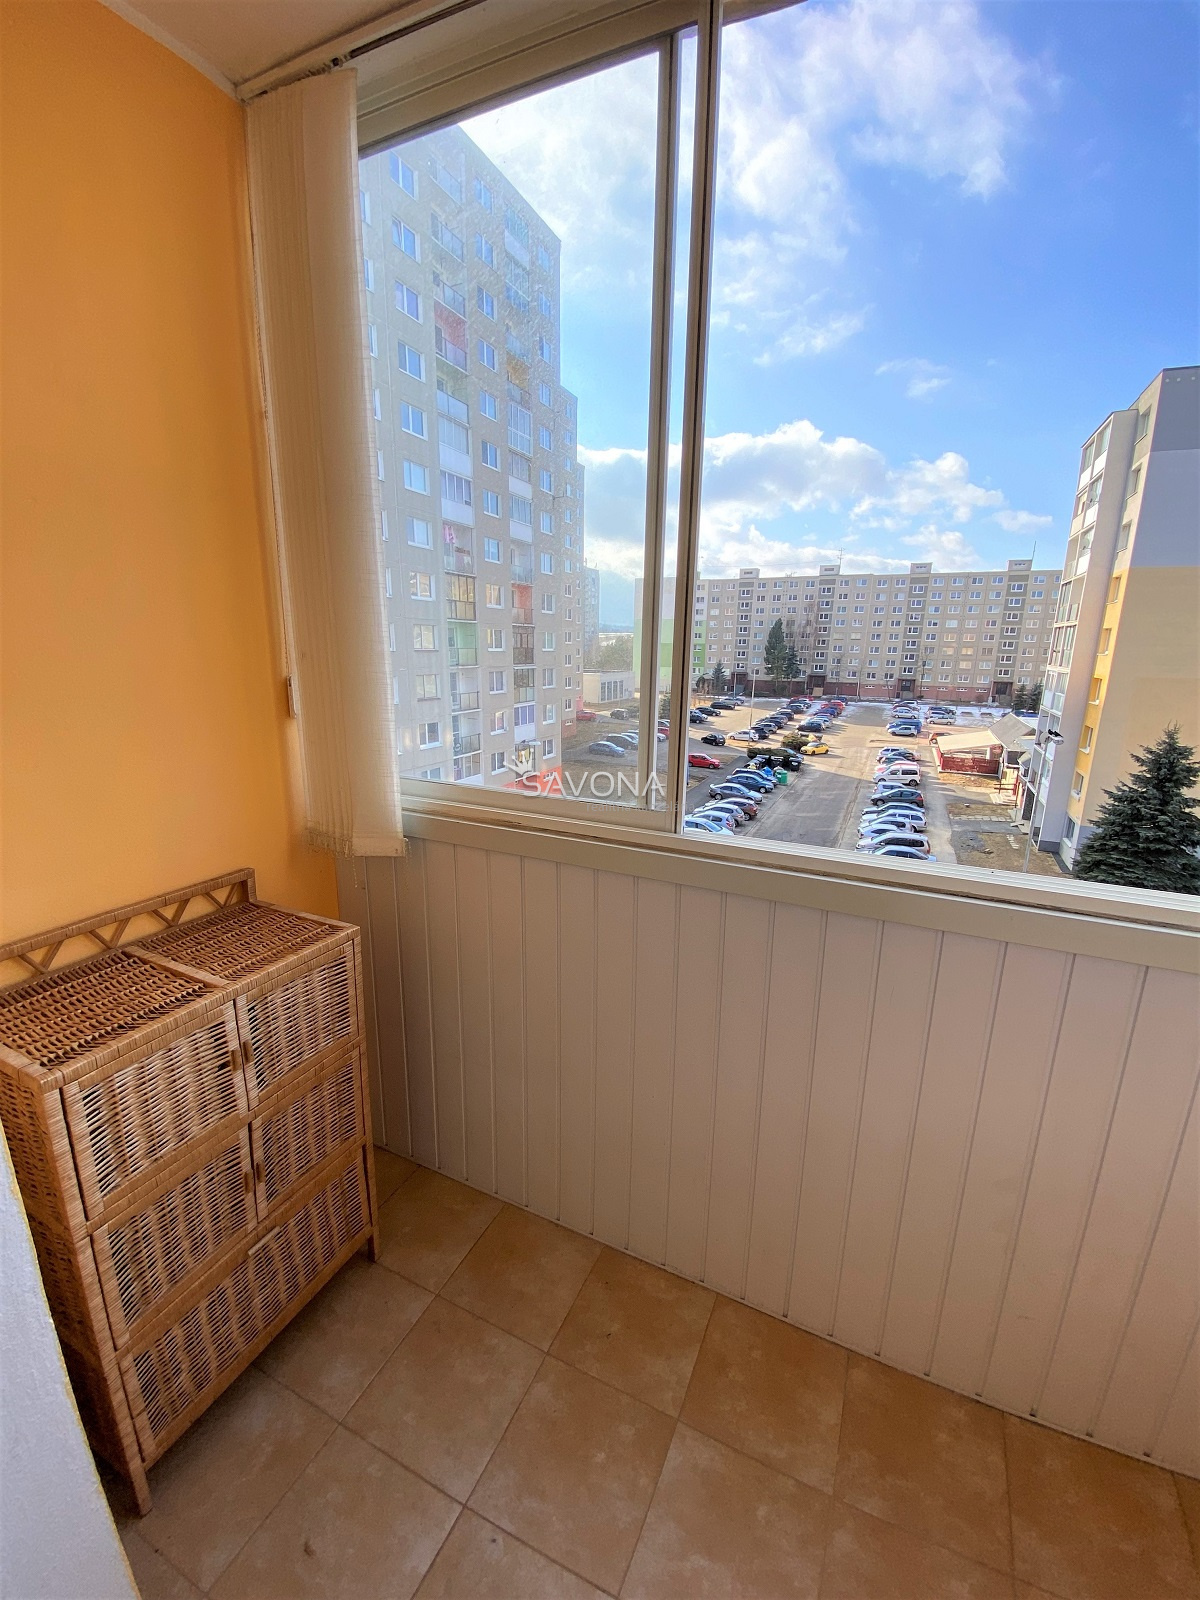 PREDANÝ - 1 izbový byt s balkónom + komplet zariadenie -  37 m2, ul. Podjavorinskej, Poprad